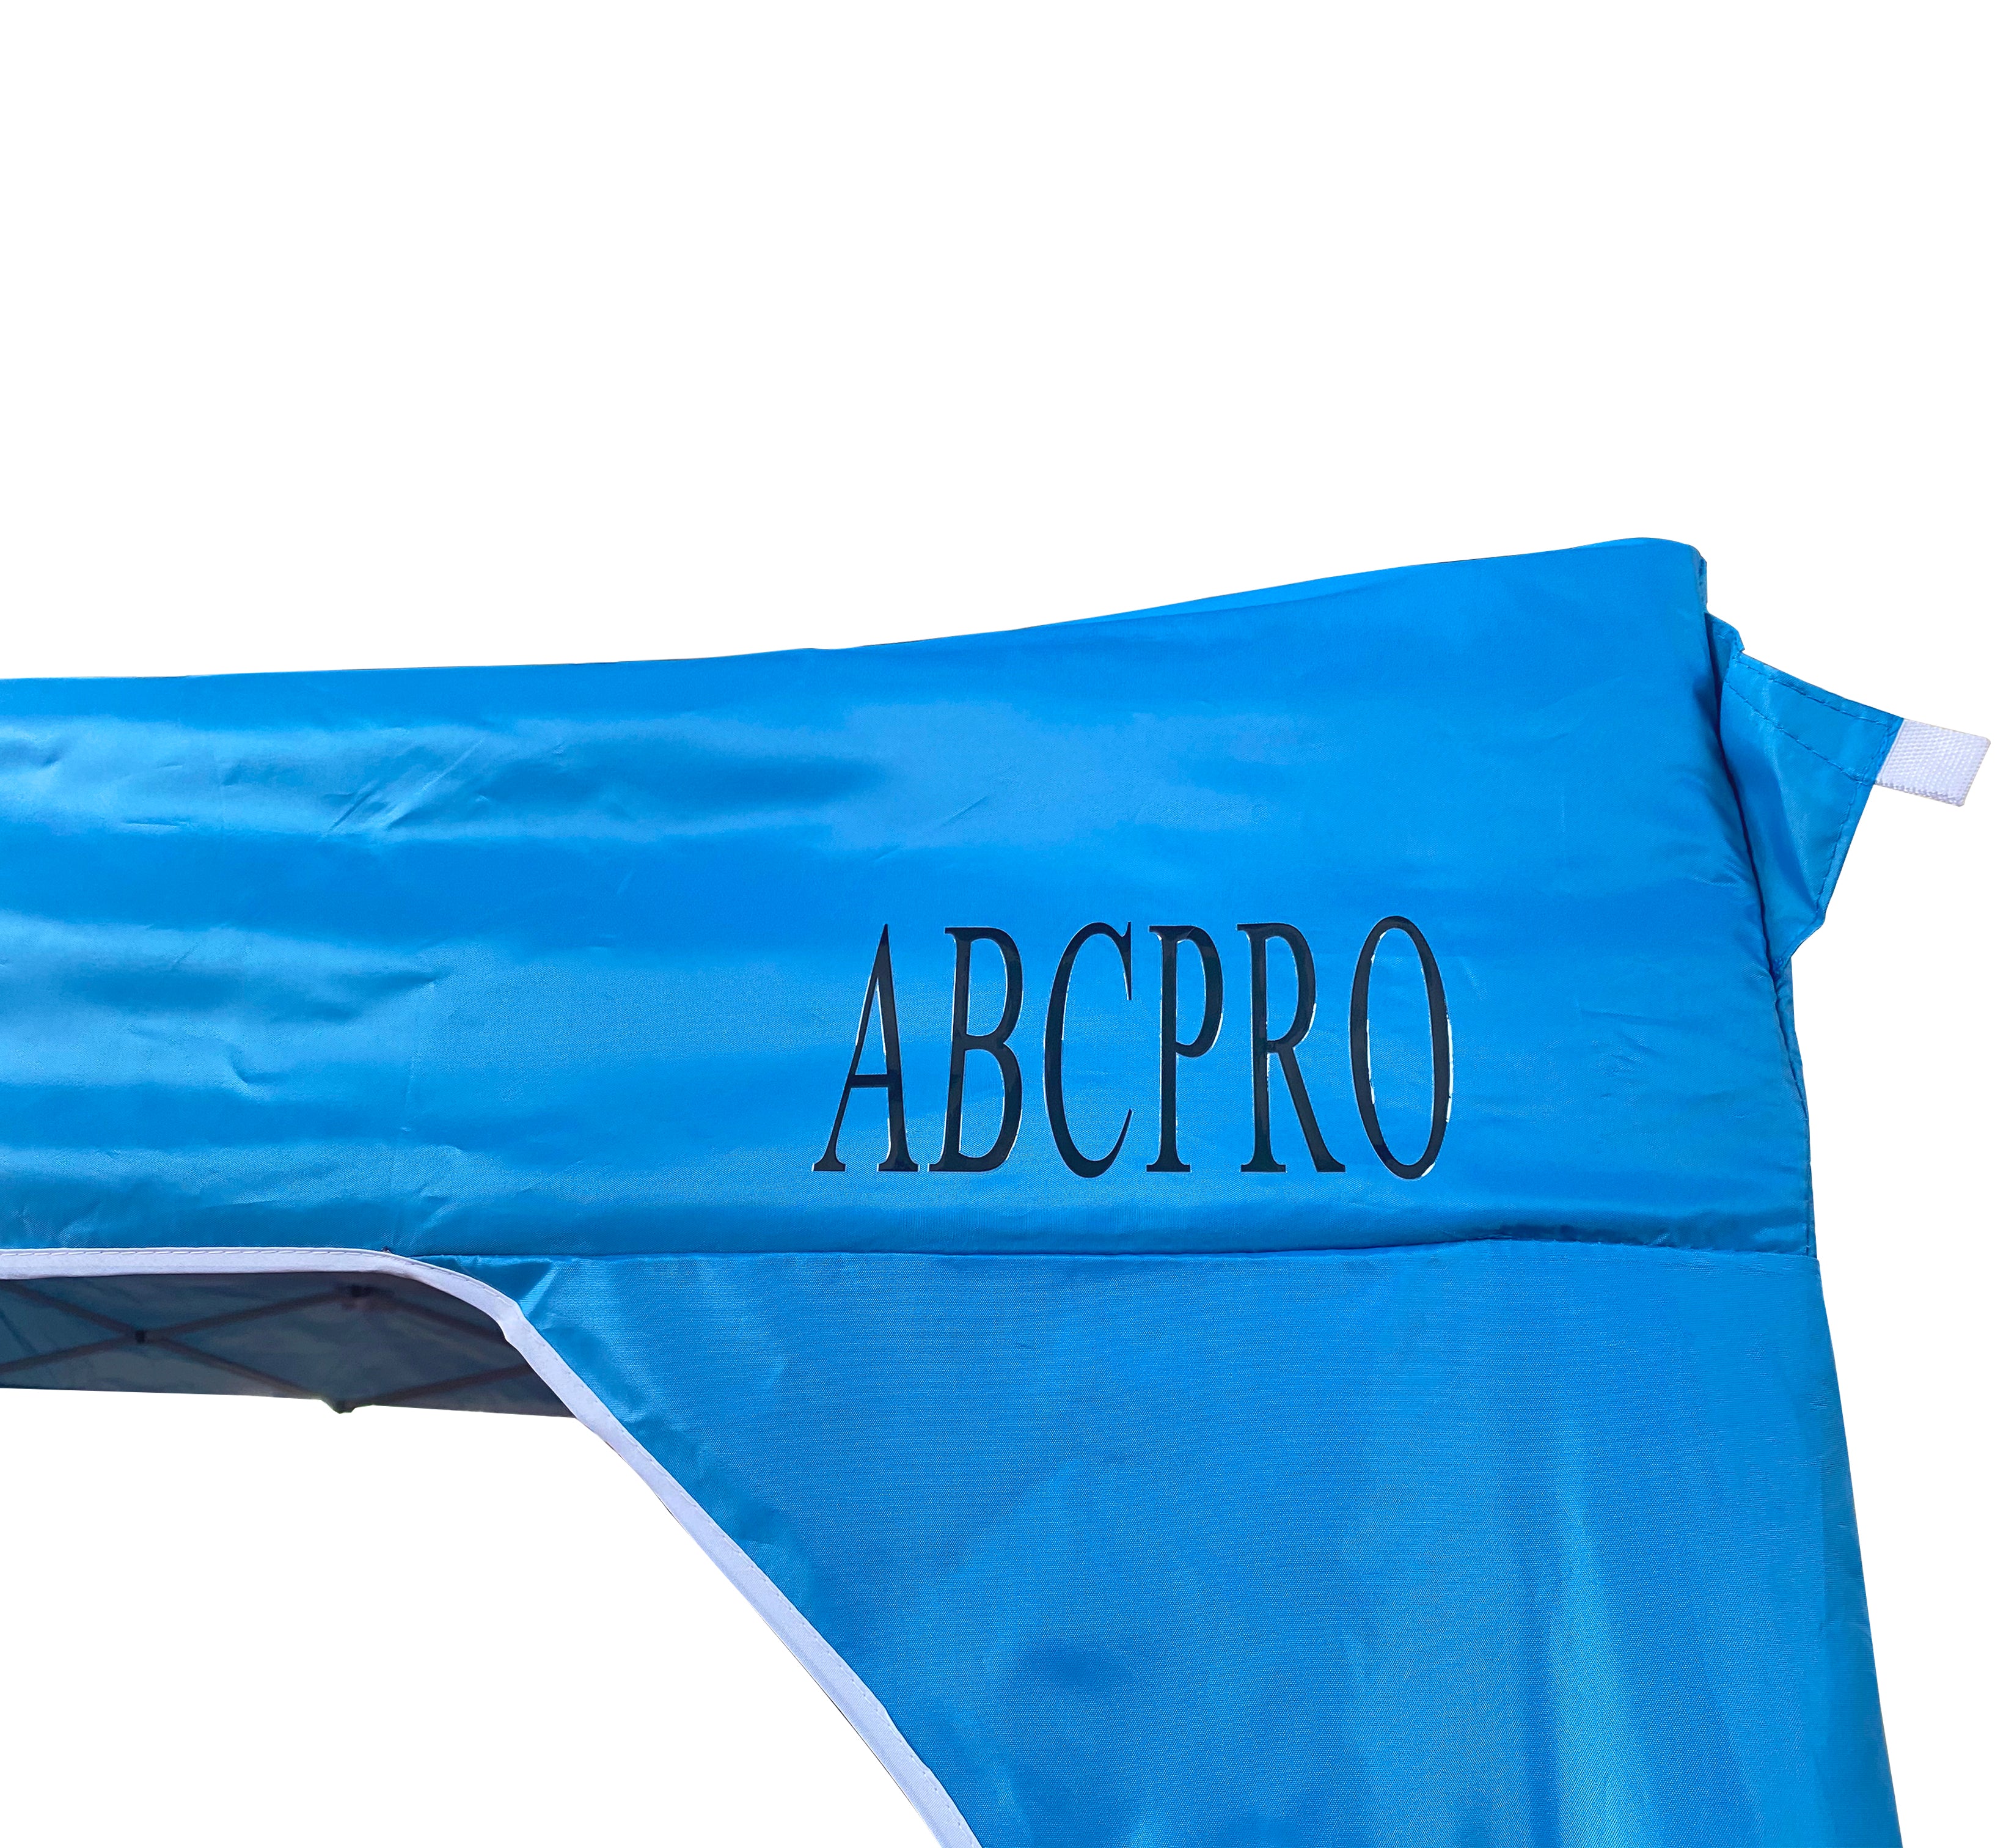 ABCPRO - de 10 x 10 pies con estructura de acero, para nivel comercial, 6 paredes desmontables con cierre, con funda con ruedas para guardarla, incluye 4 bolsas de contrapeso